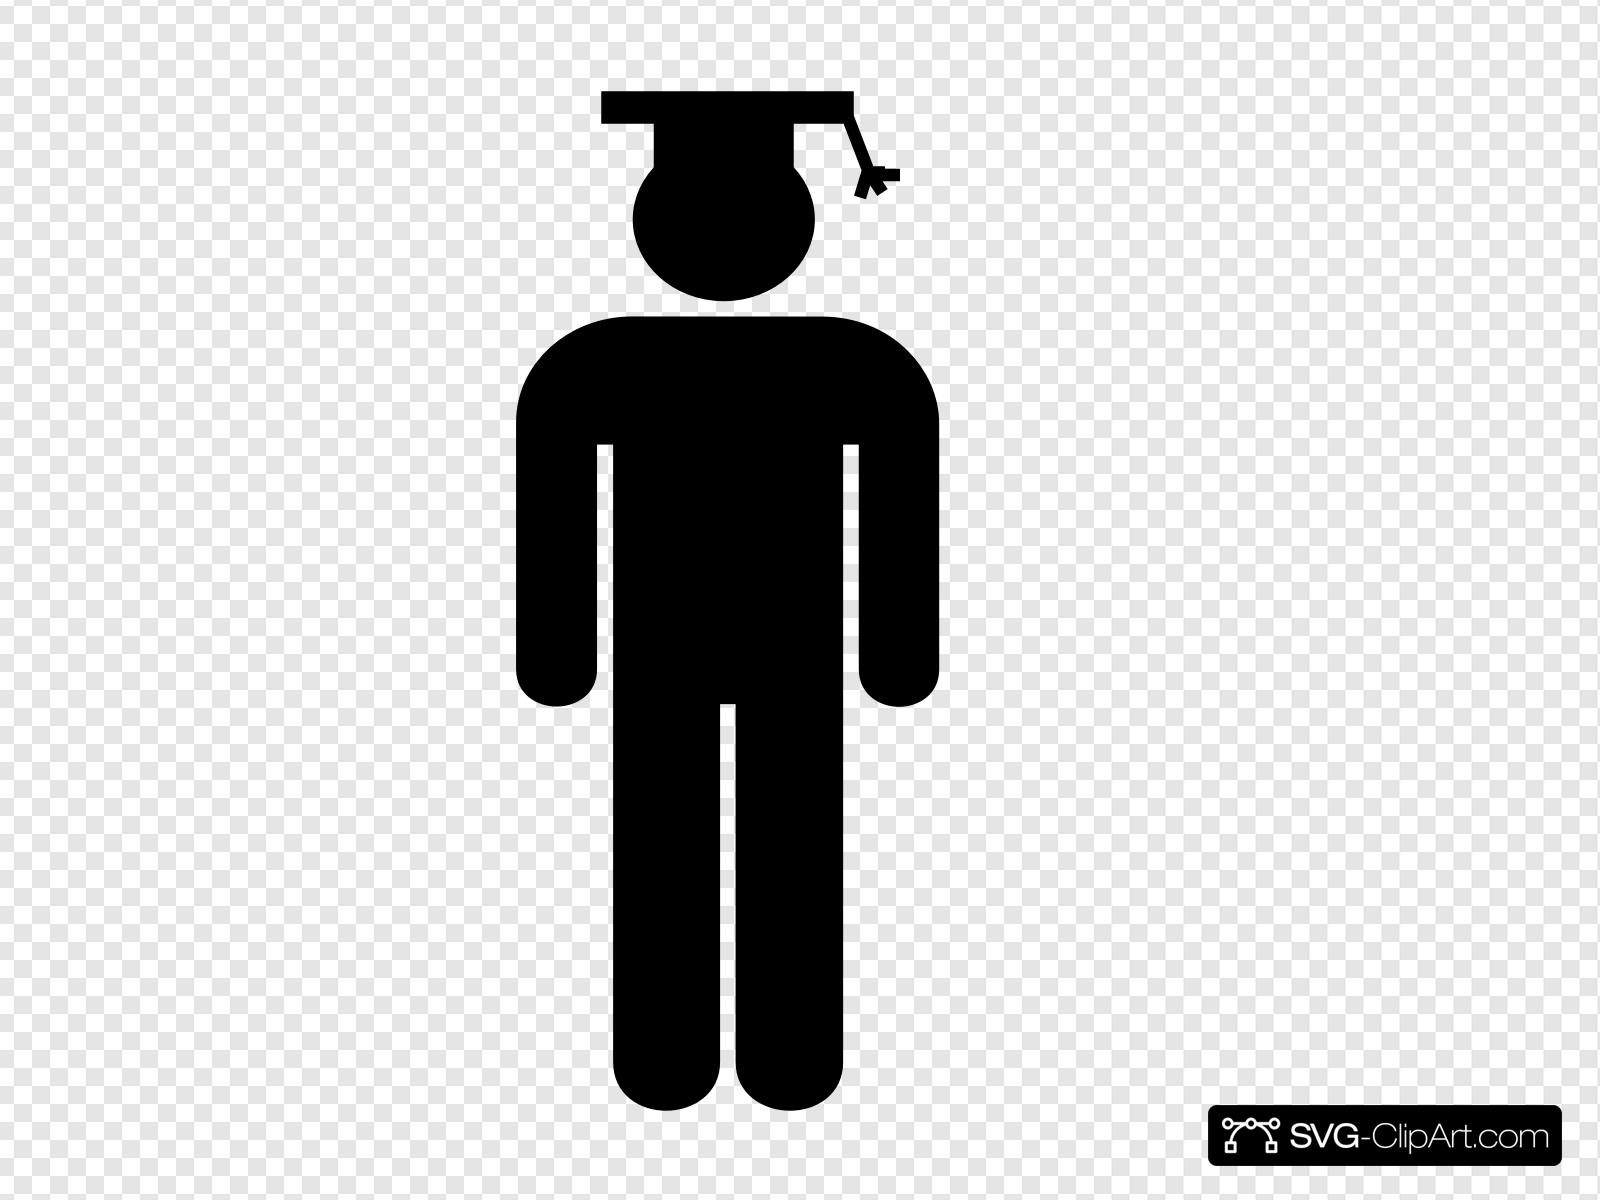 Symbol clip art icon. Graduate clipart person